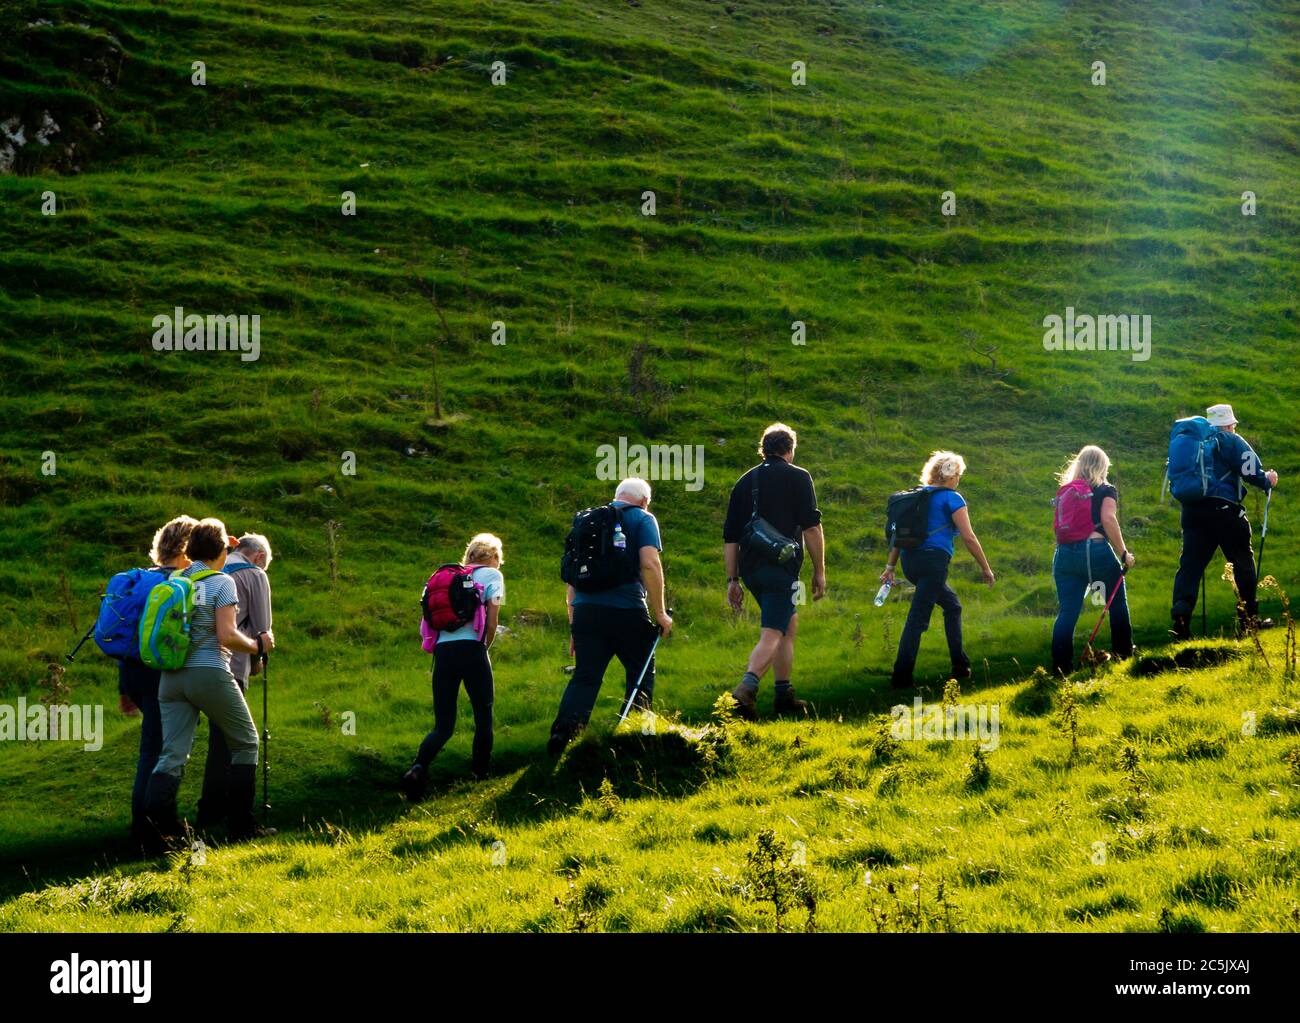 Groupe de randonneurs grimpant une colline verte dans le parc national de Peak District Derbyshire Angleterre Royaume-Uni Banque D'Images